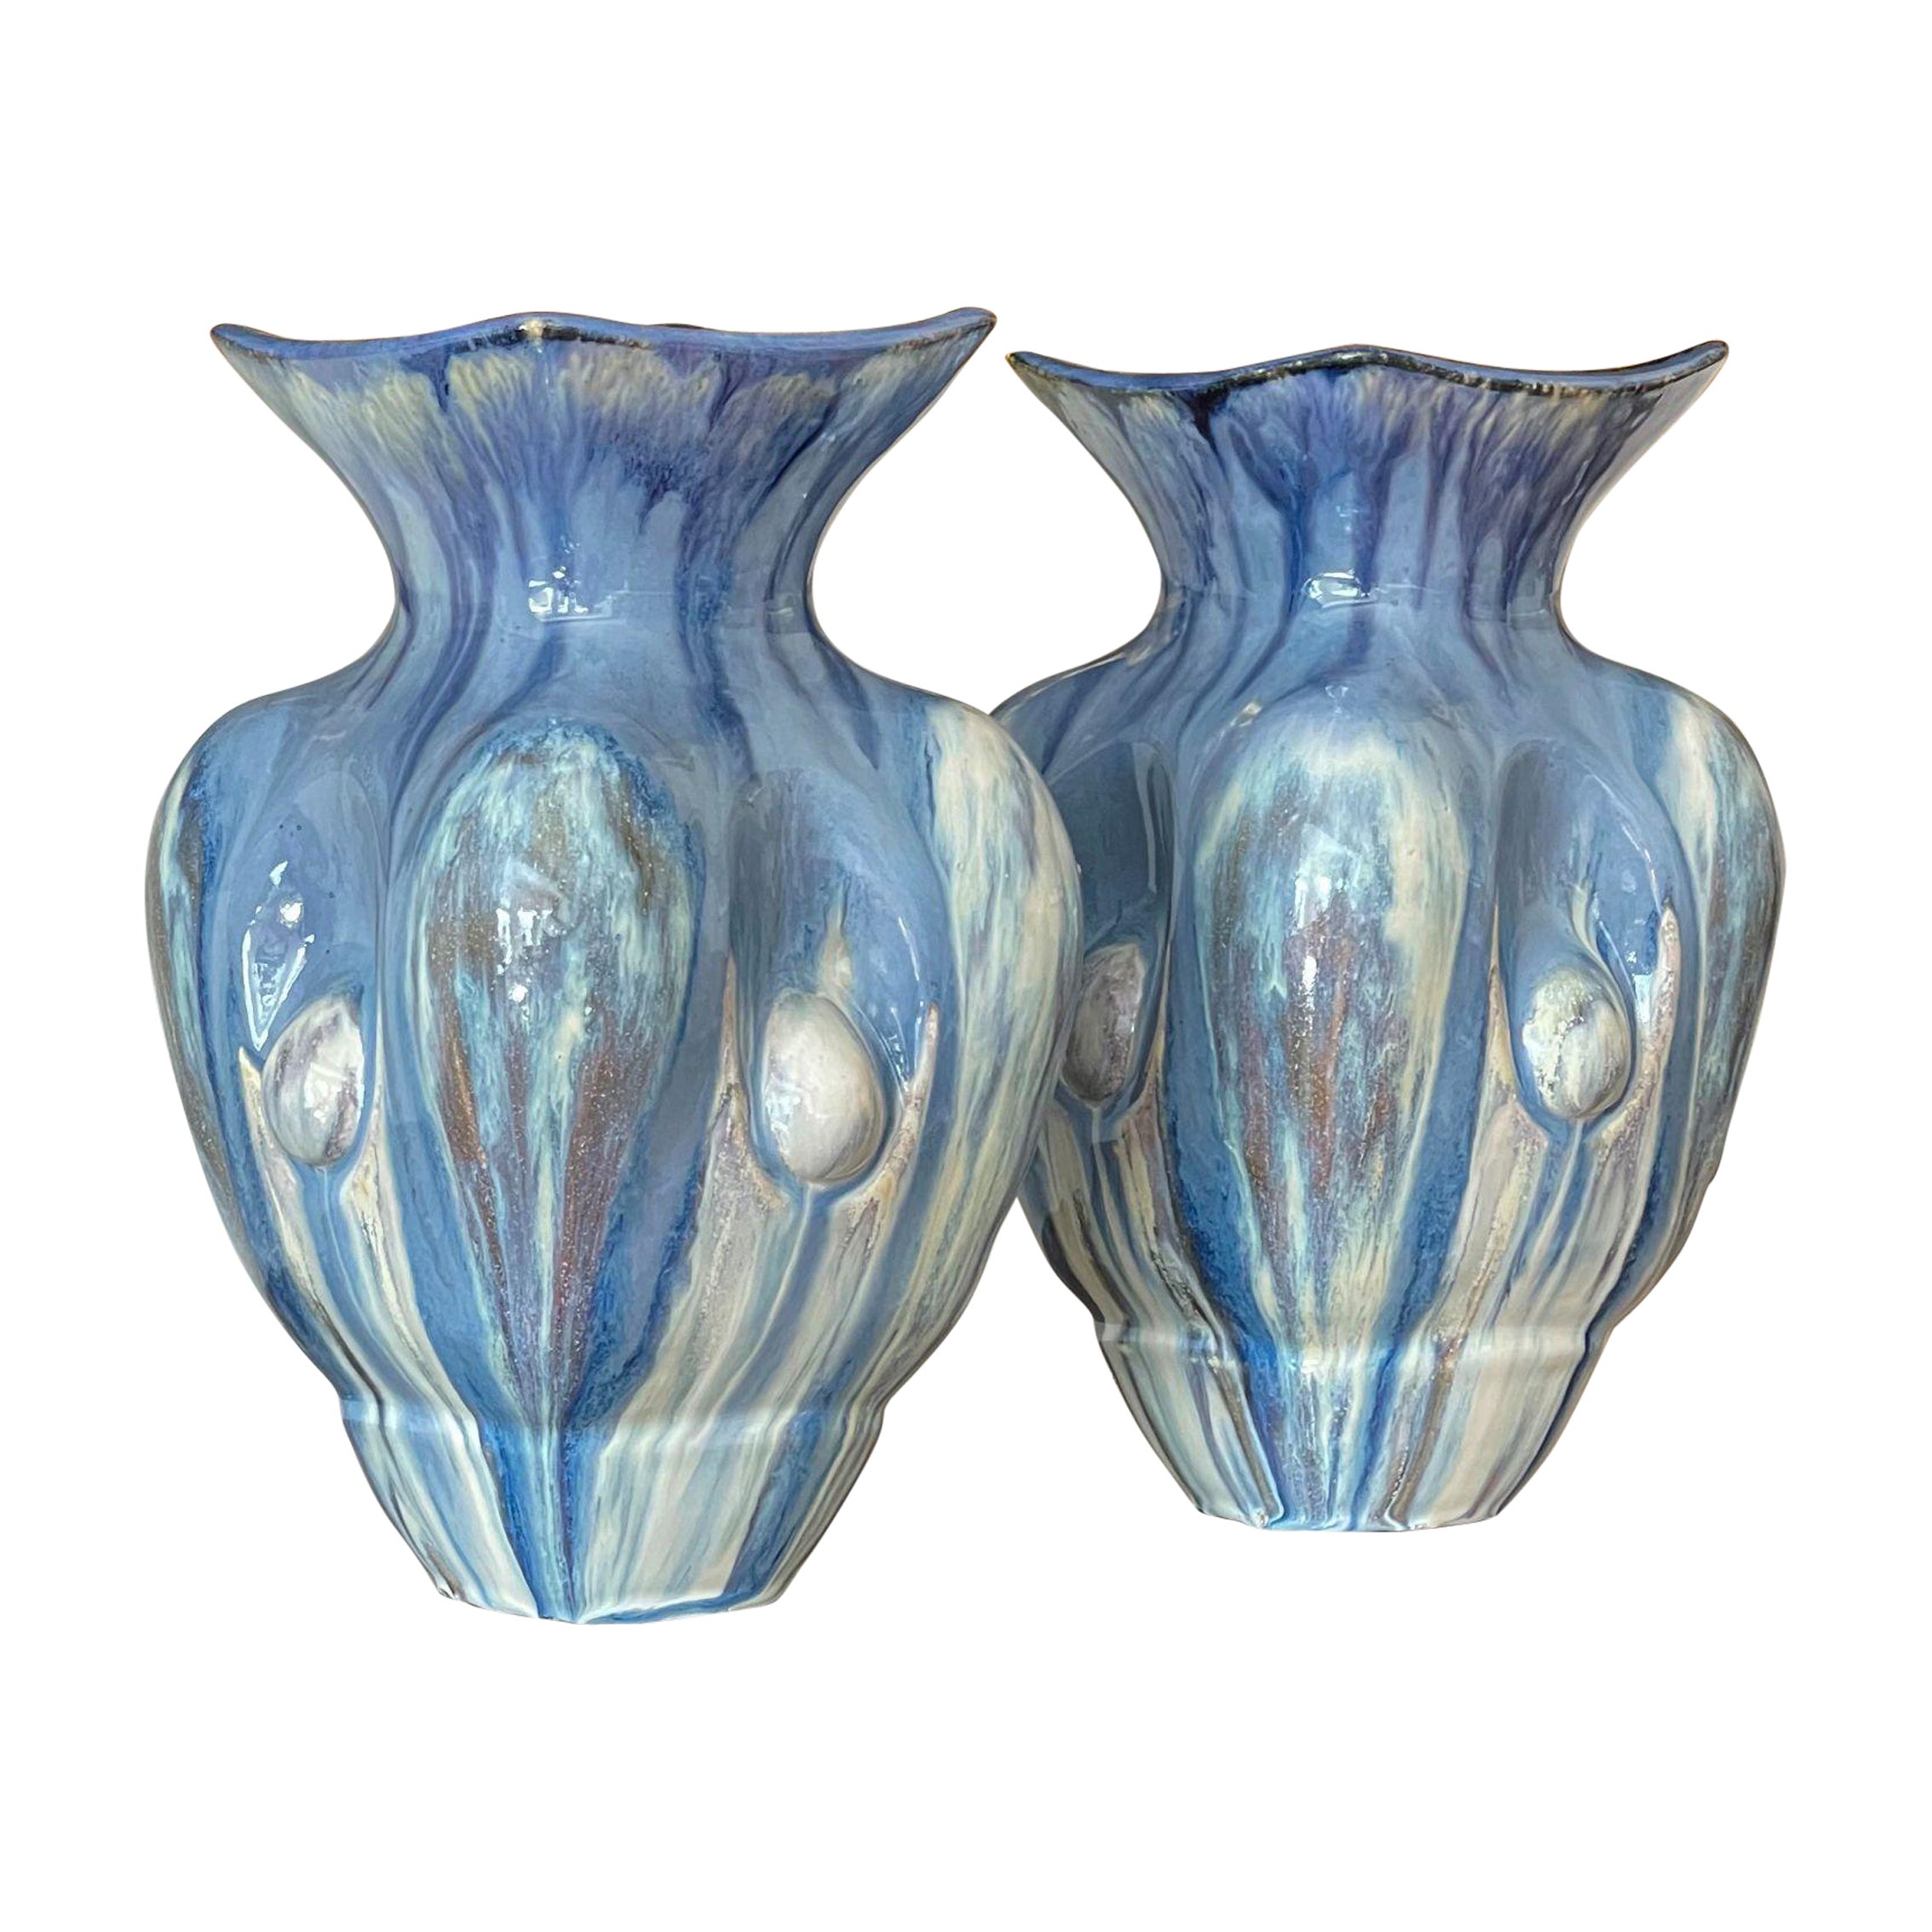 Zwei himmelblaue Keramikvasen, zeitgenössisches italienisches Einzelstück des 21. Jahrhunderts, Paar